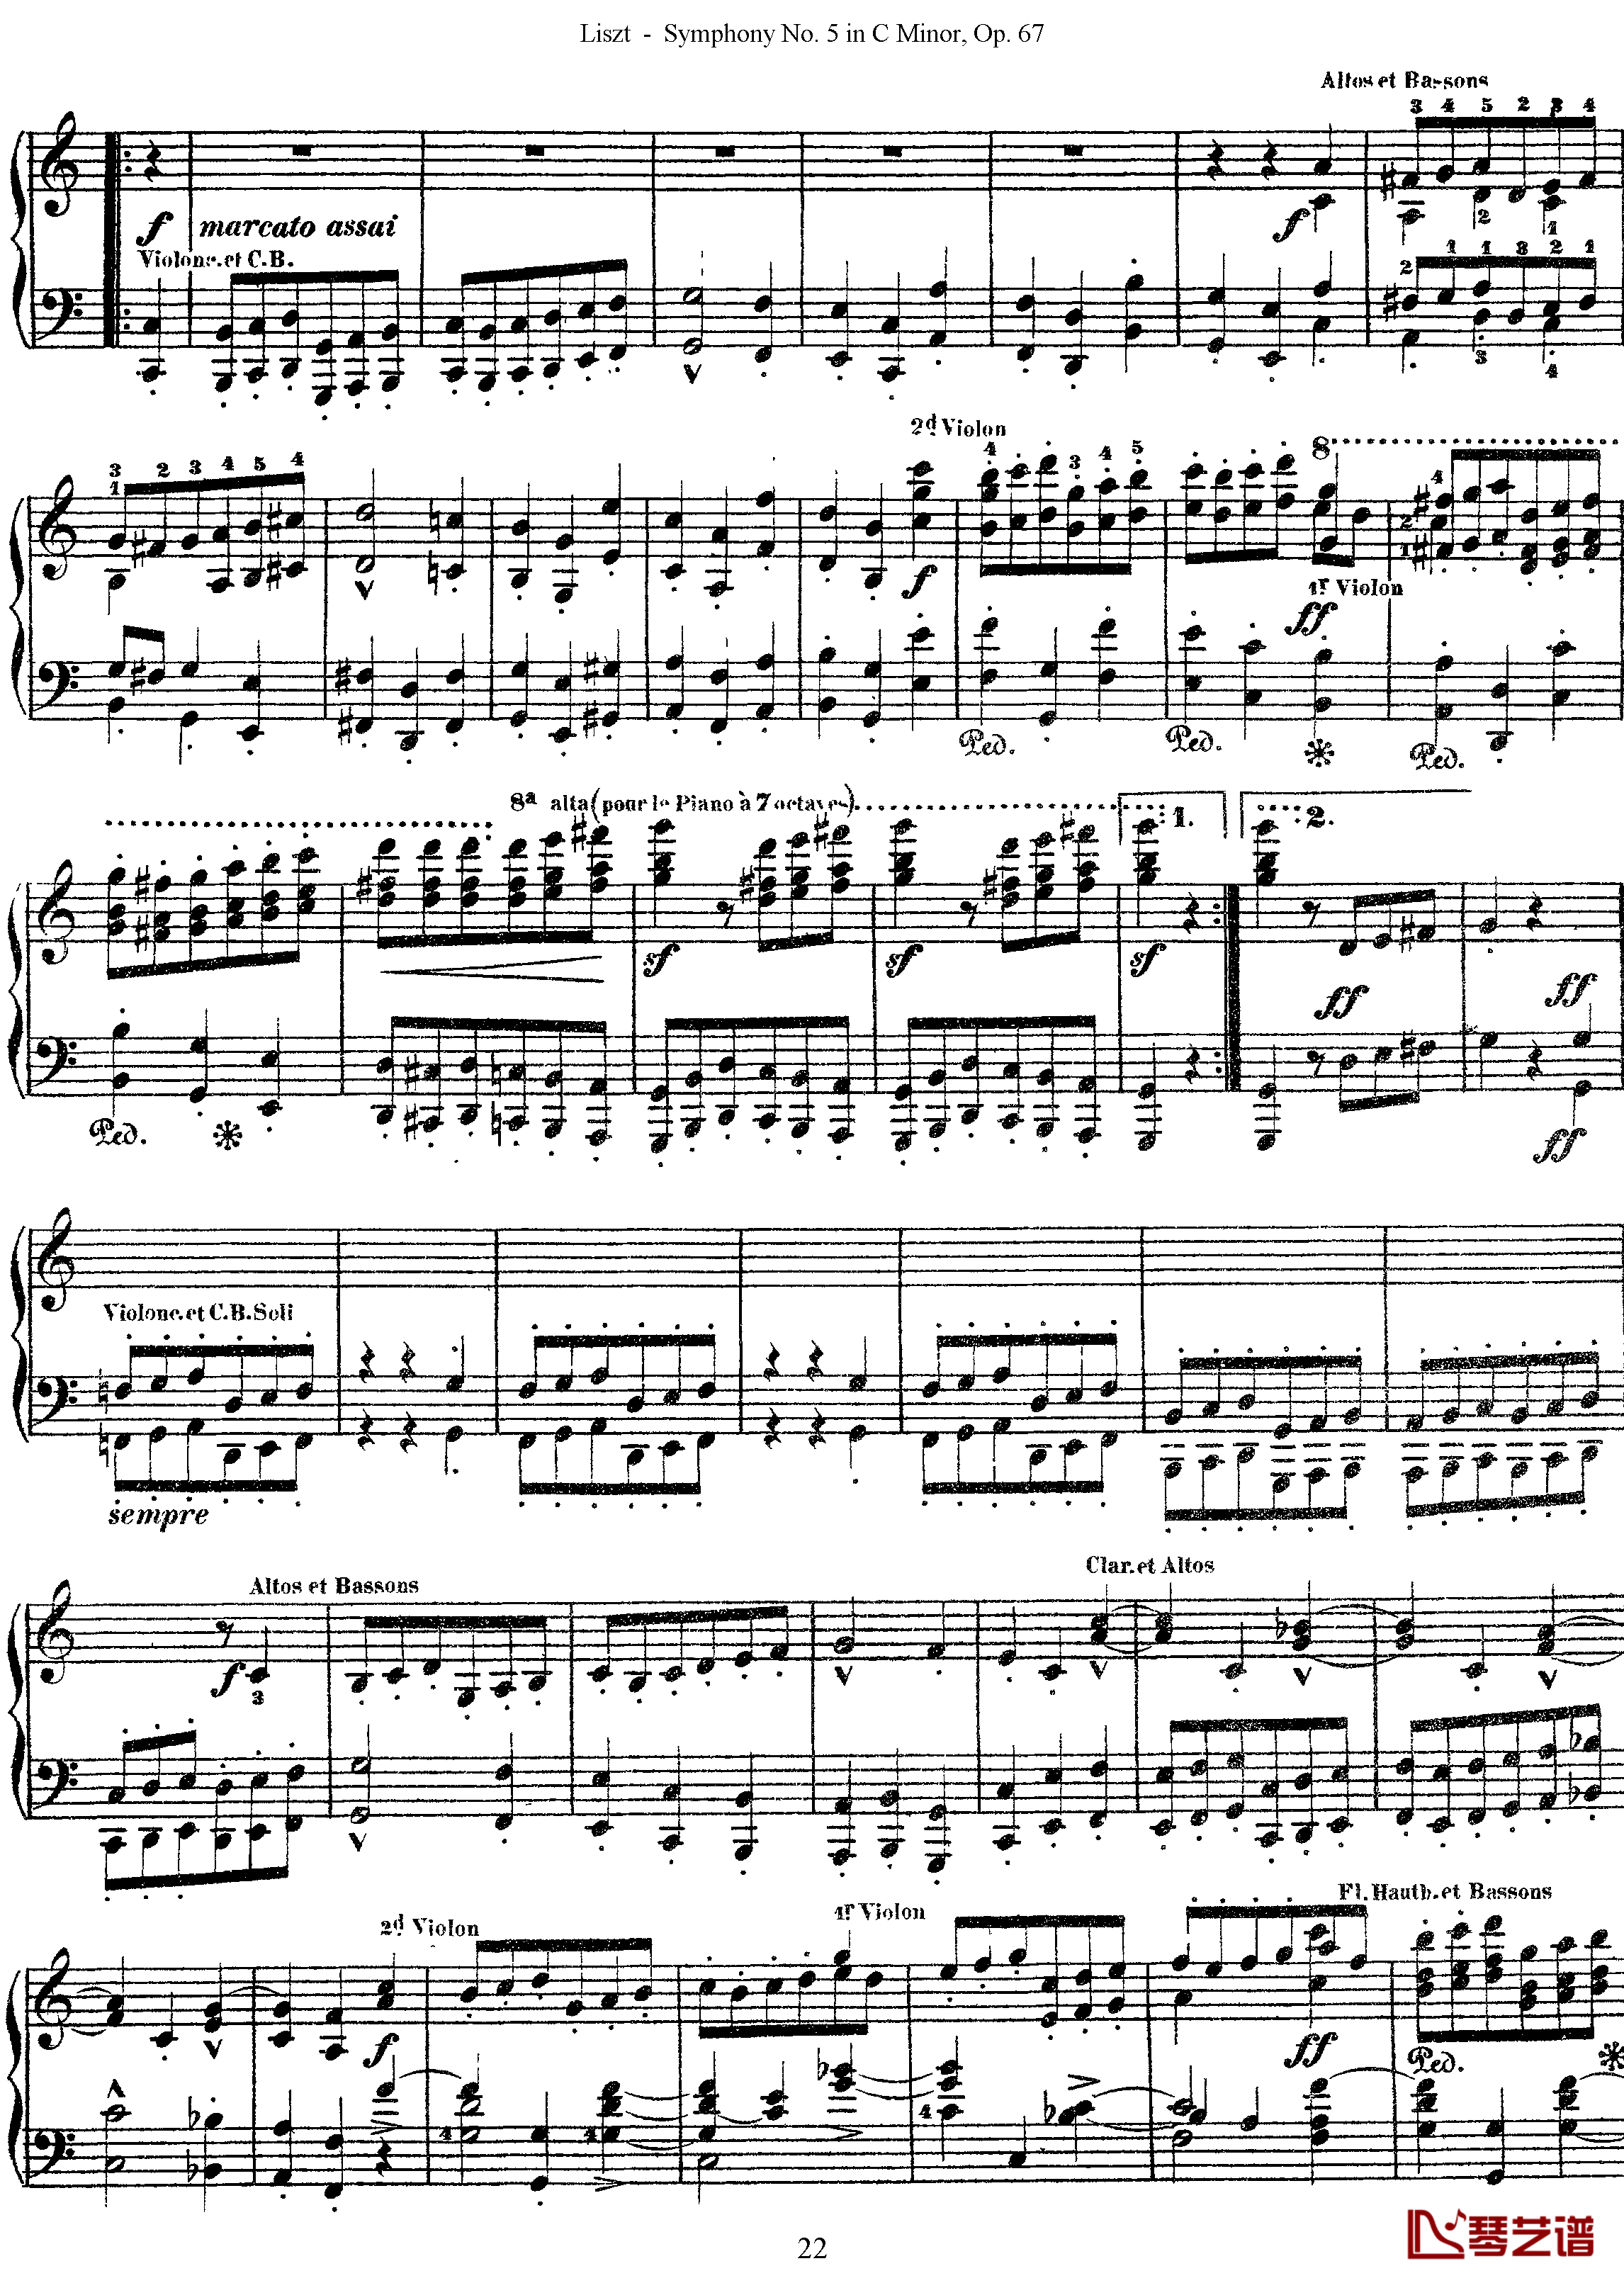 第五交响乐的钢琴曲钢琴谱-李斯特-李斯特改编自贝多芬22